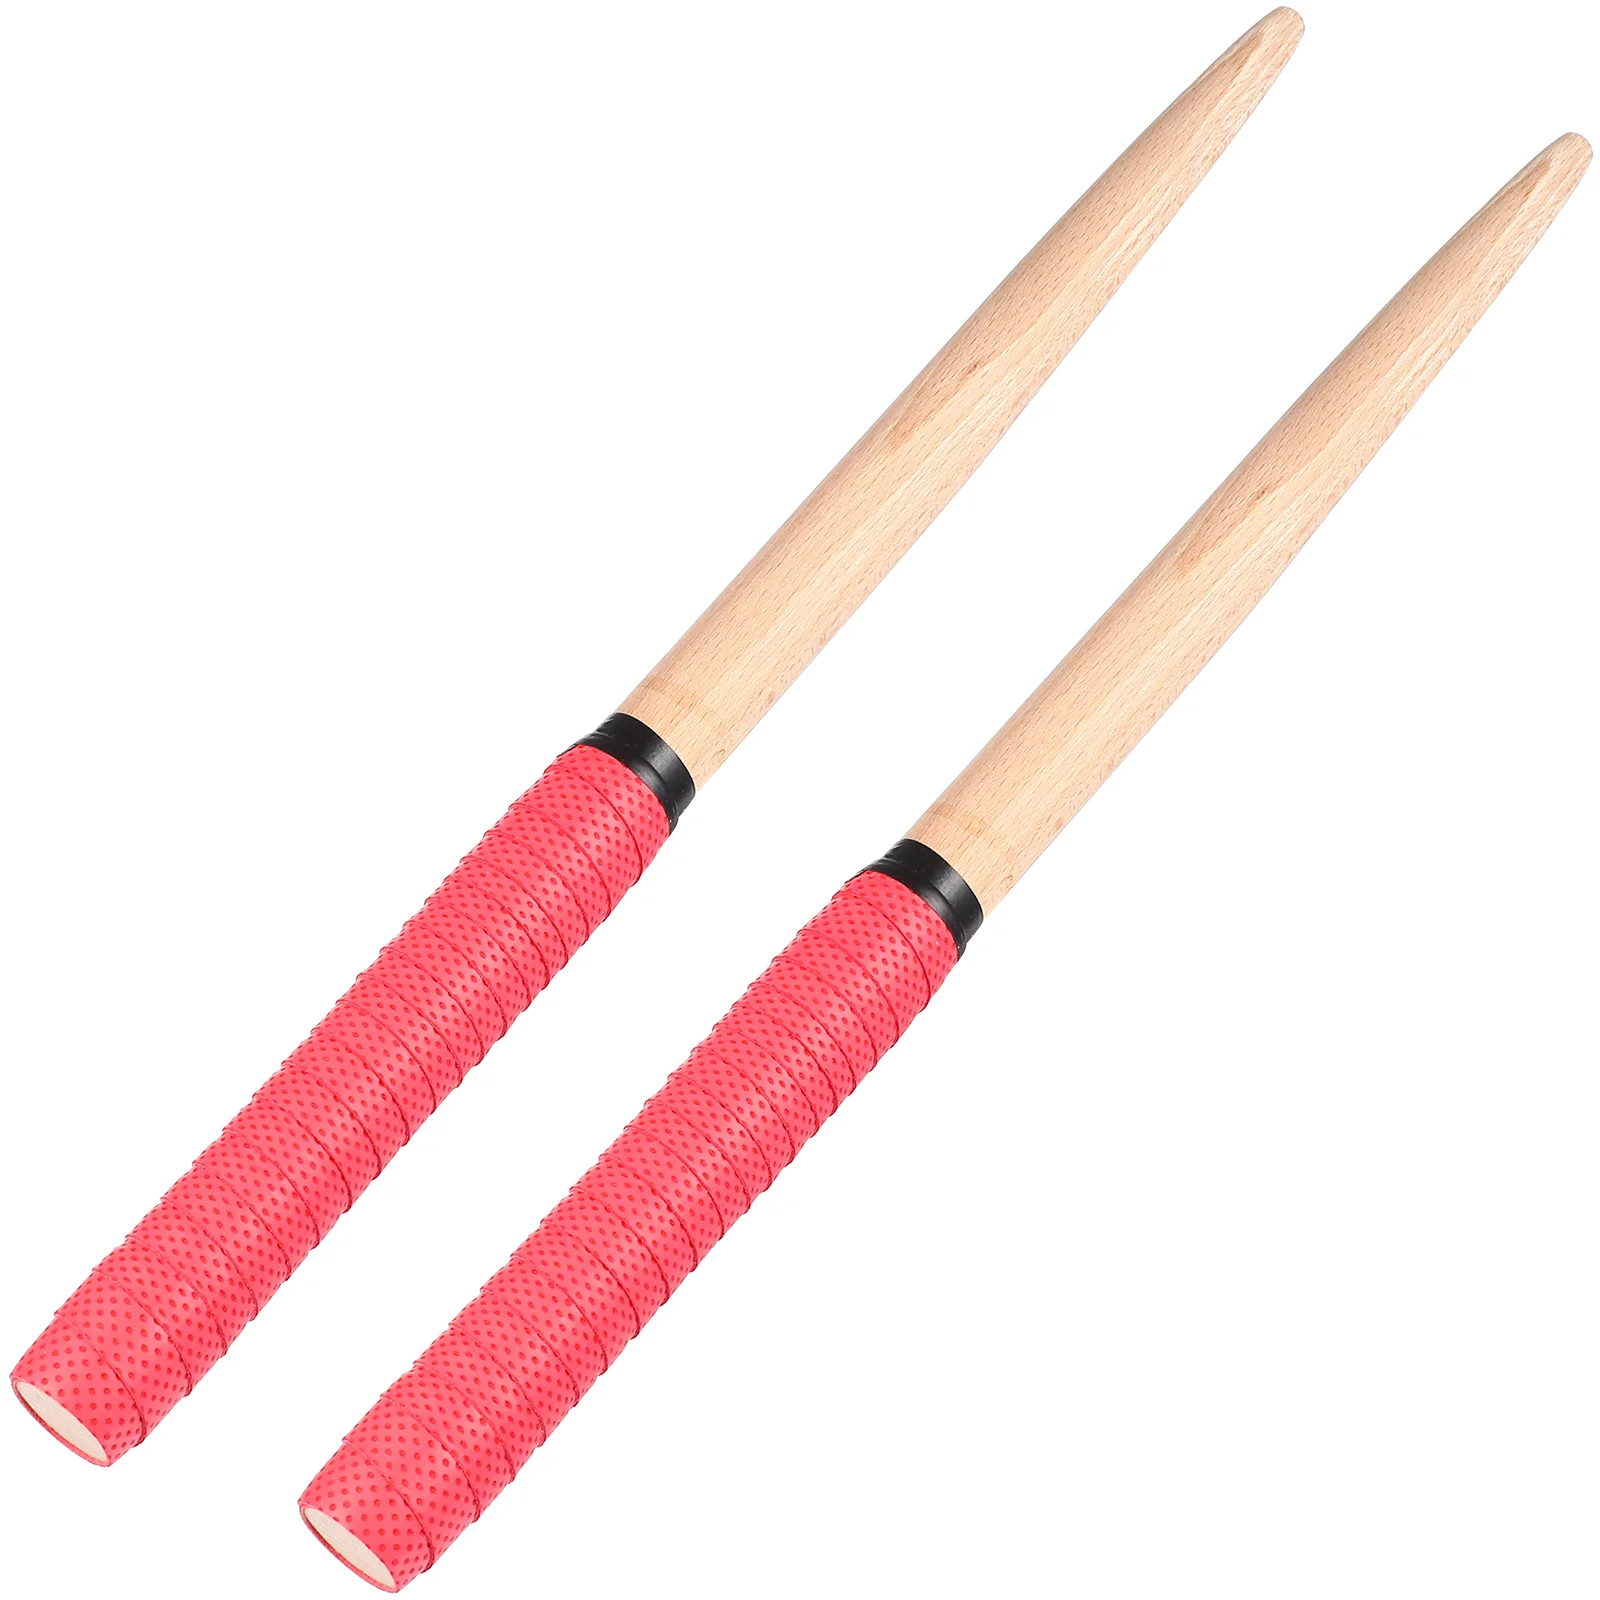 

1 Pair Drumsticks Portable Wood Drum Sticks Lightweight Handle Sticks for Drum